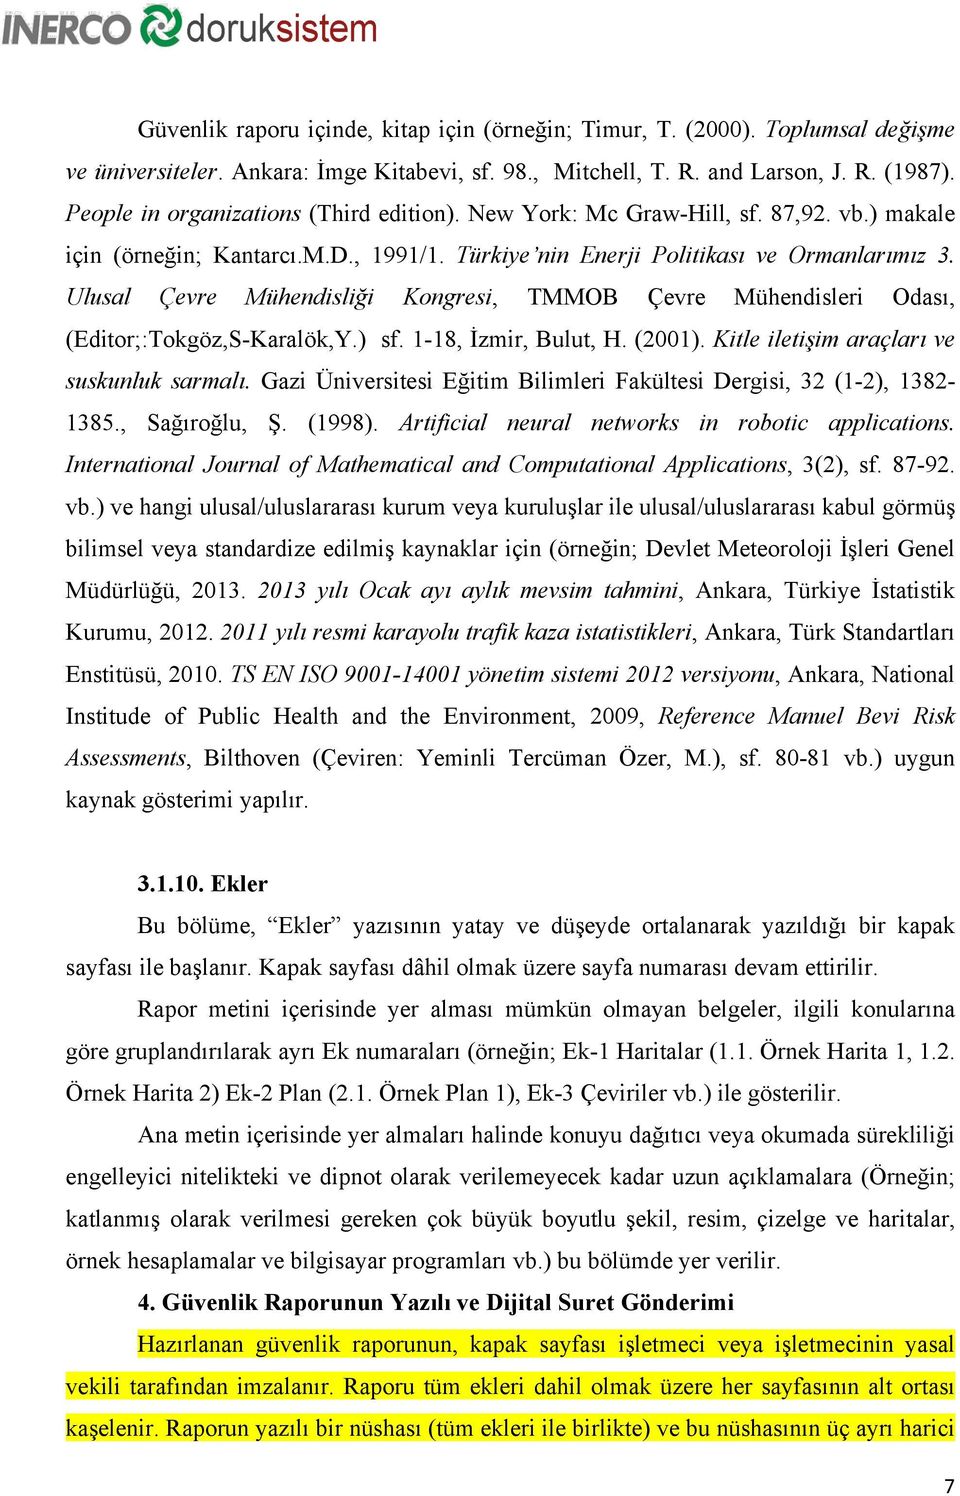 Ulusal Çevre Mühendisliği Kongresi, TMMOB Çevre Mühendisleri Odası, (Editor;:Tokgöz,S-Karalök,Y.) sf. 1-18, İzmir, Bulut, H. (2001). Kitle iletişim araçları ve suskunluk sarmalı.